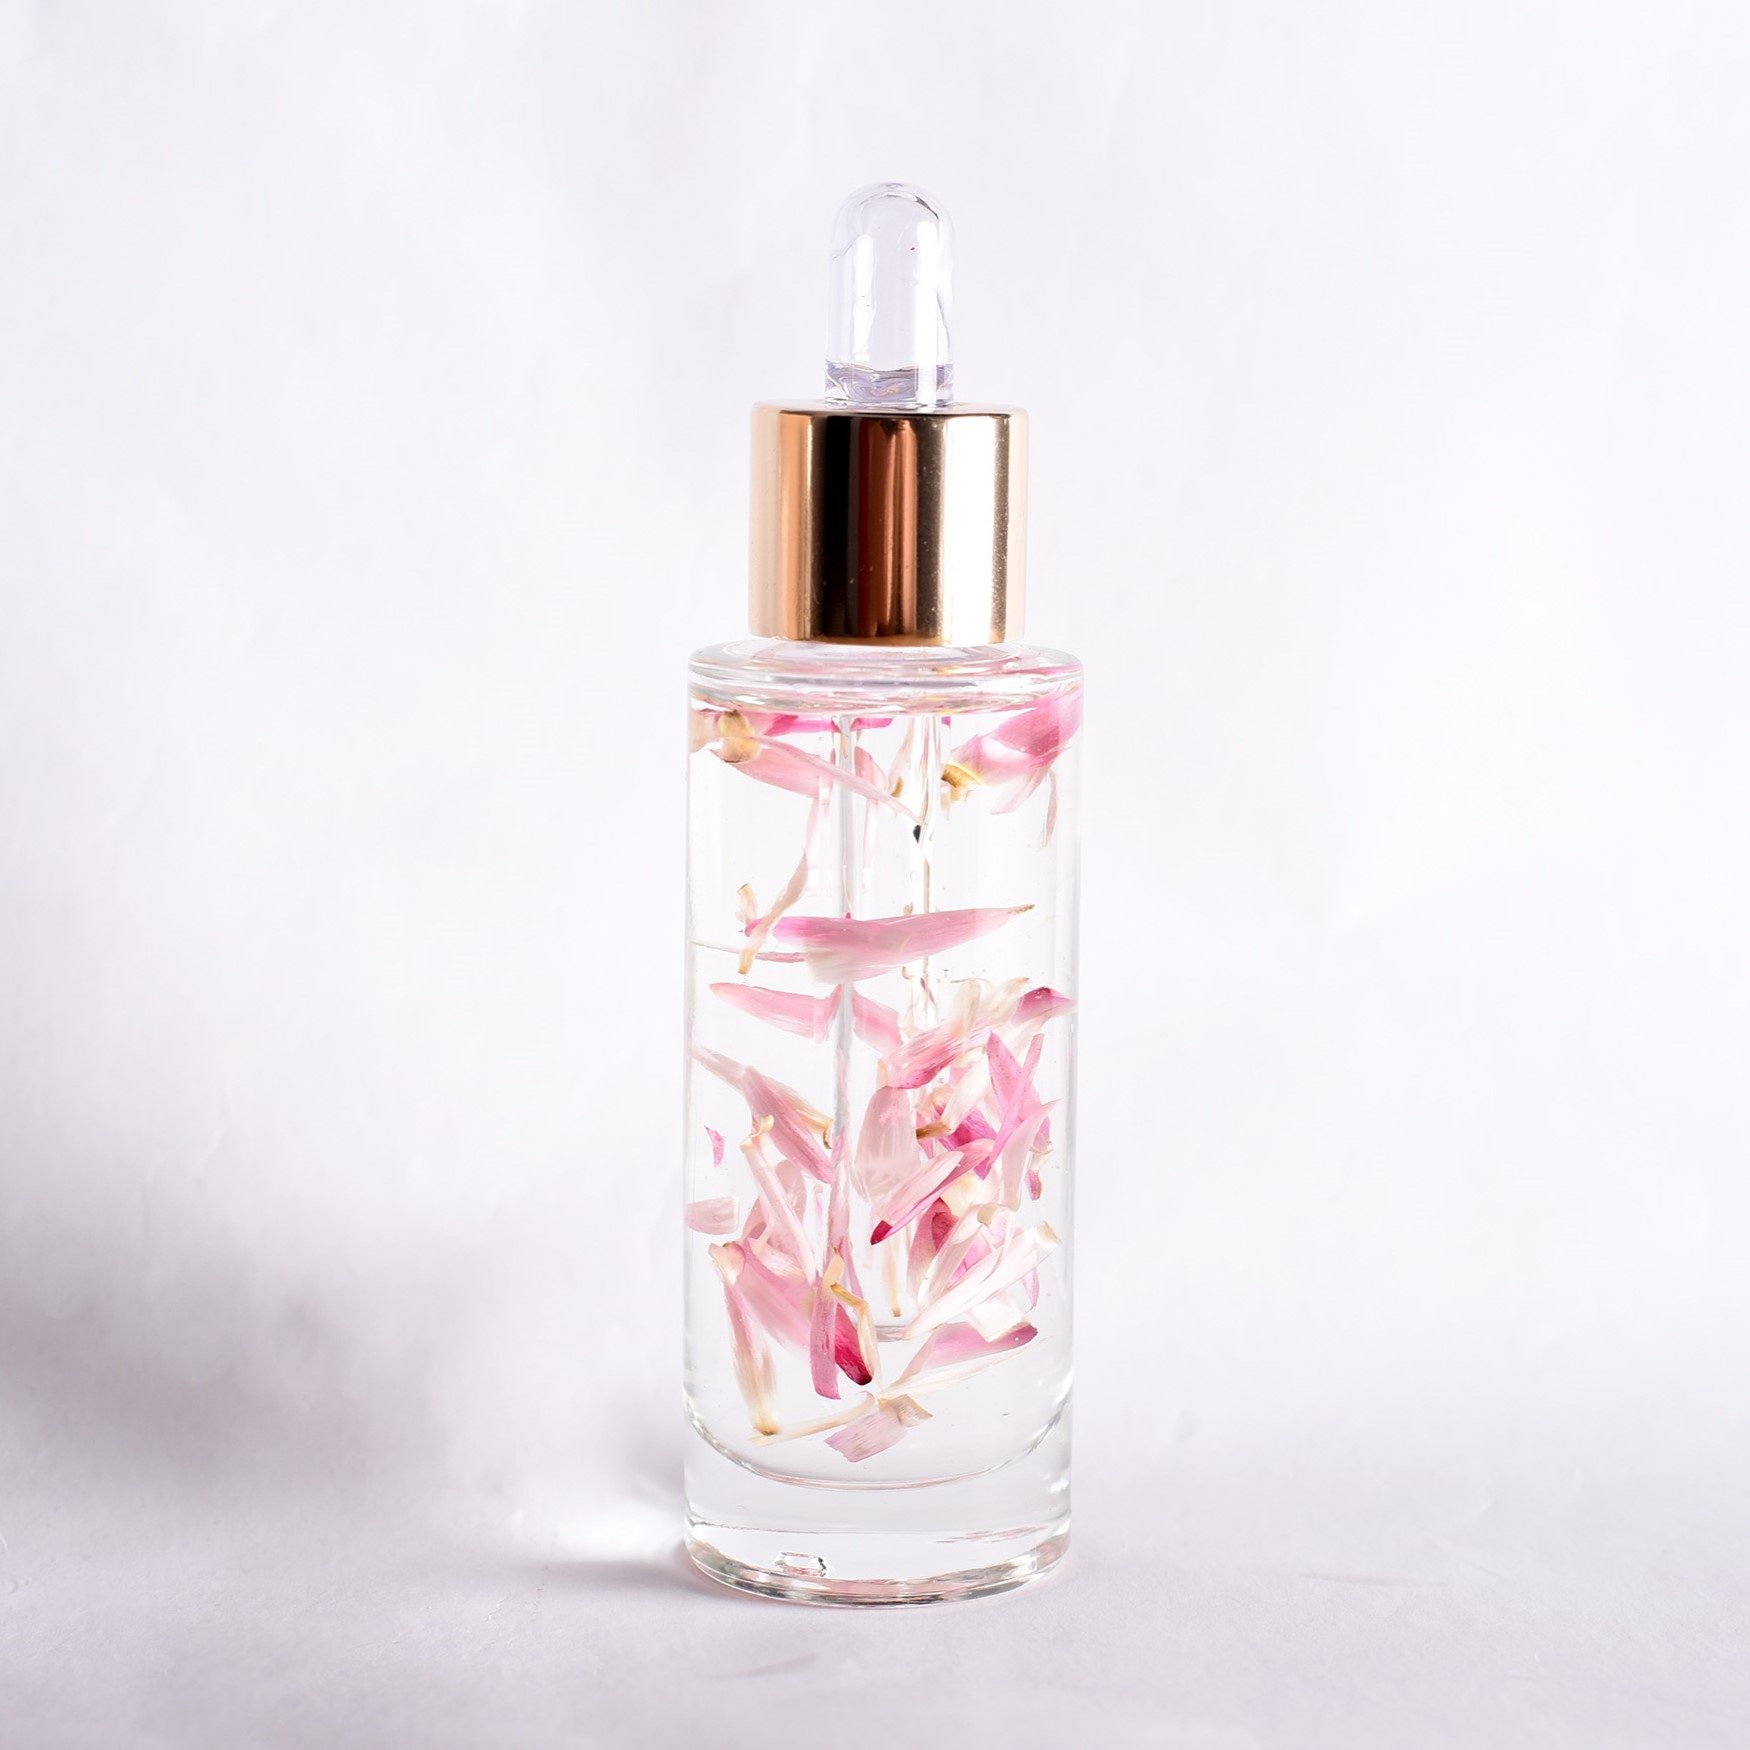 Lessonia est un fabricant d'ingrédients cosmétique spécialisé dans les particules décoratives notamment dans les particules de fleurs.